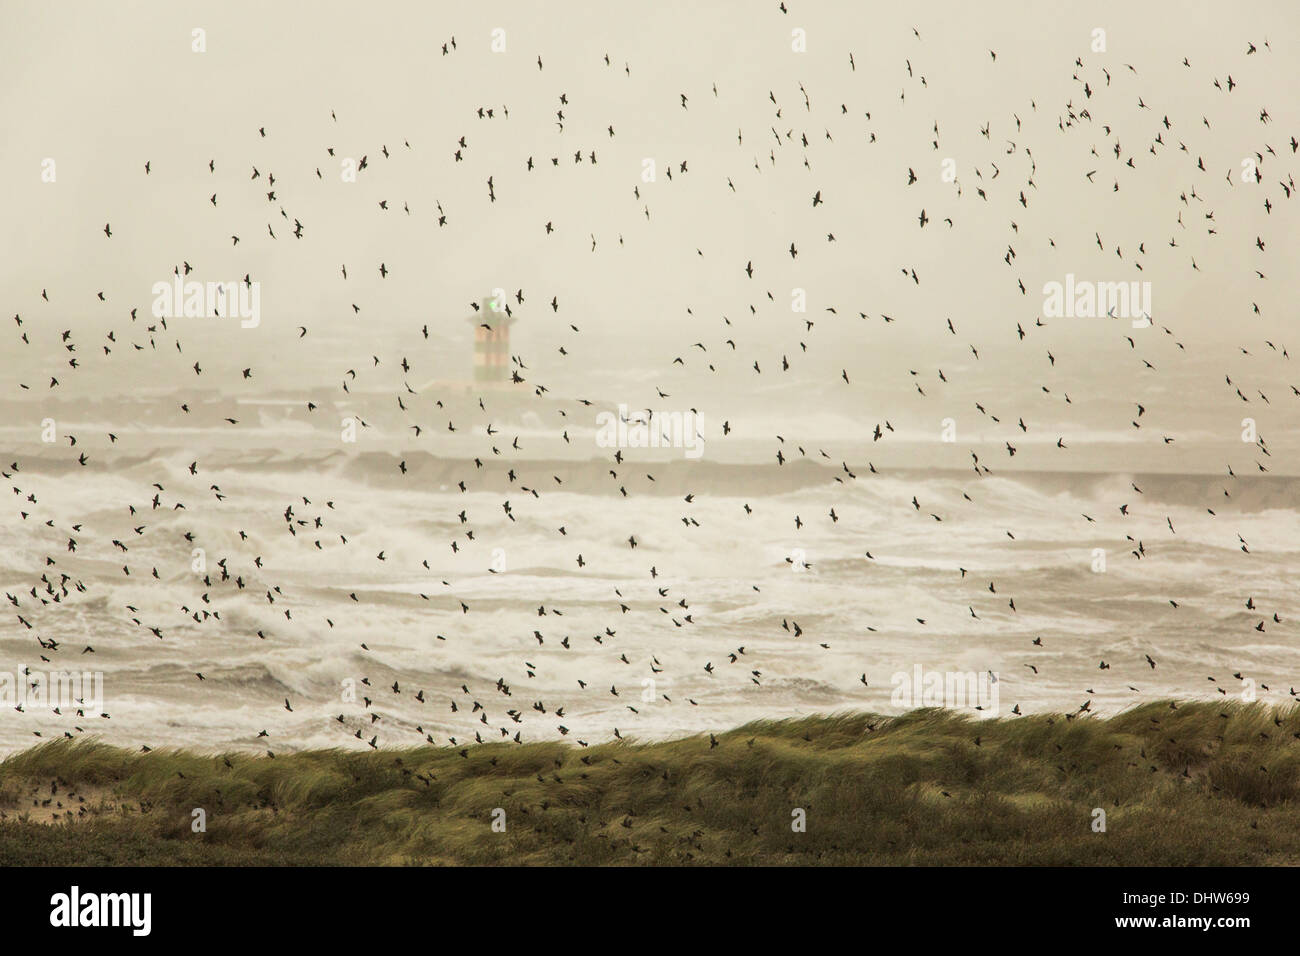 Pays-bas, IJmuiden, ADAC lourd sur la mer du Nord. Balise de détresse. Volée de moineaux essayer de voler contre le vent Banque D'Images